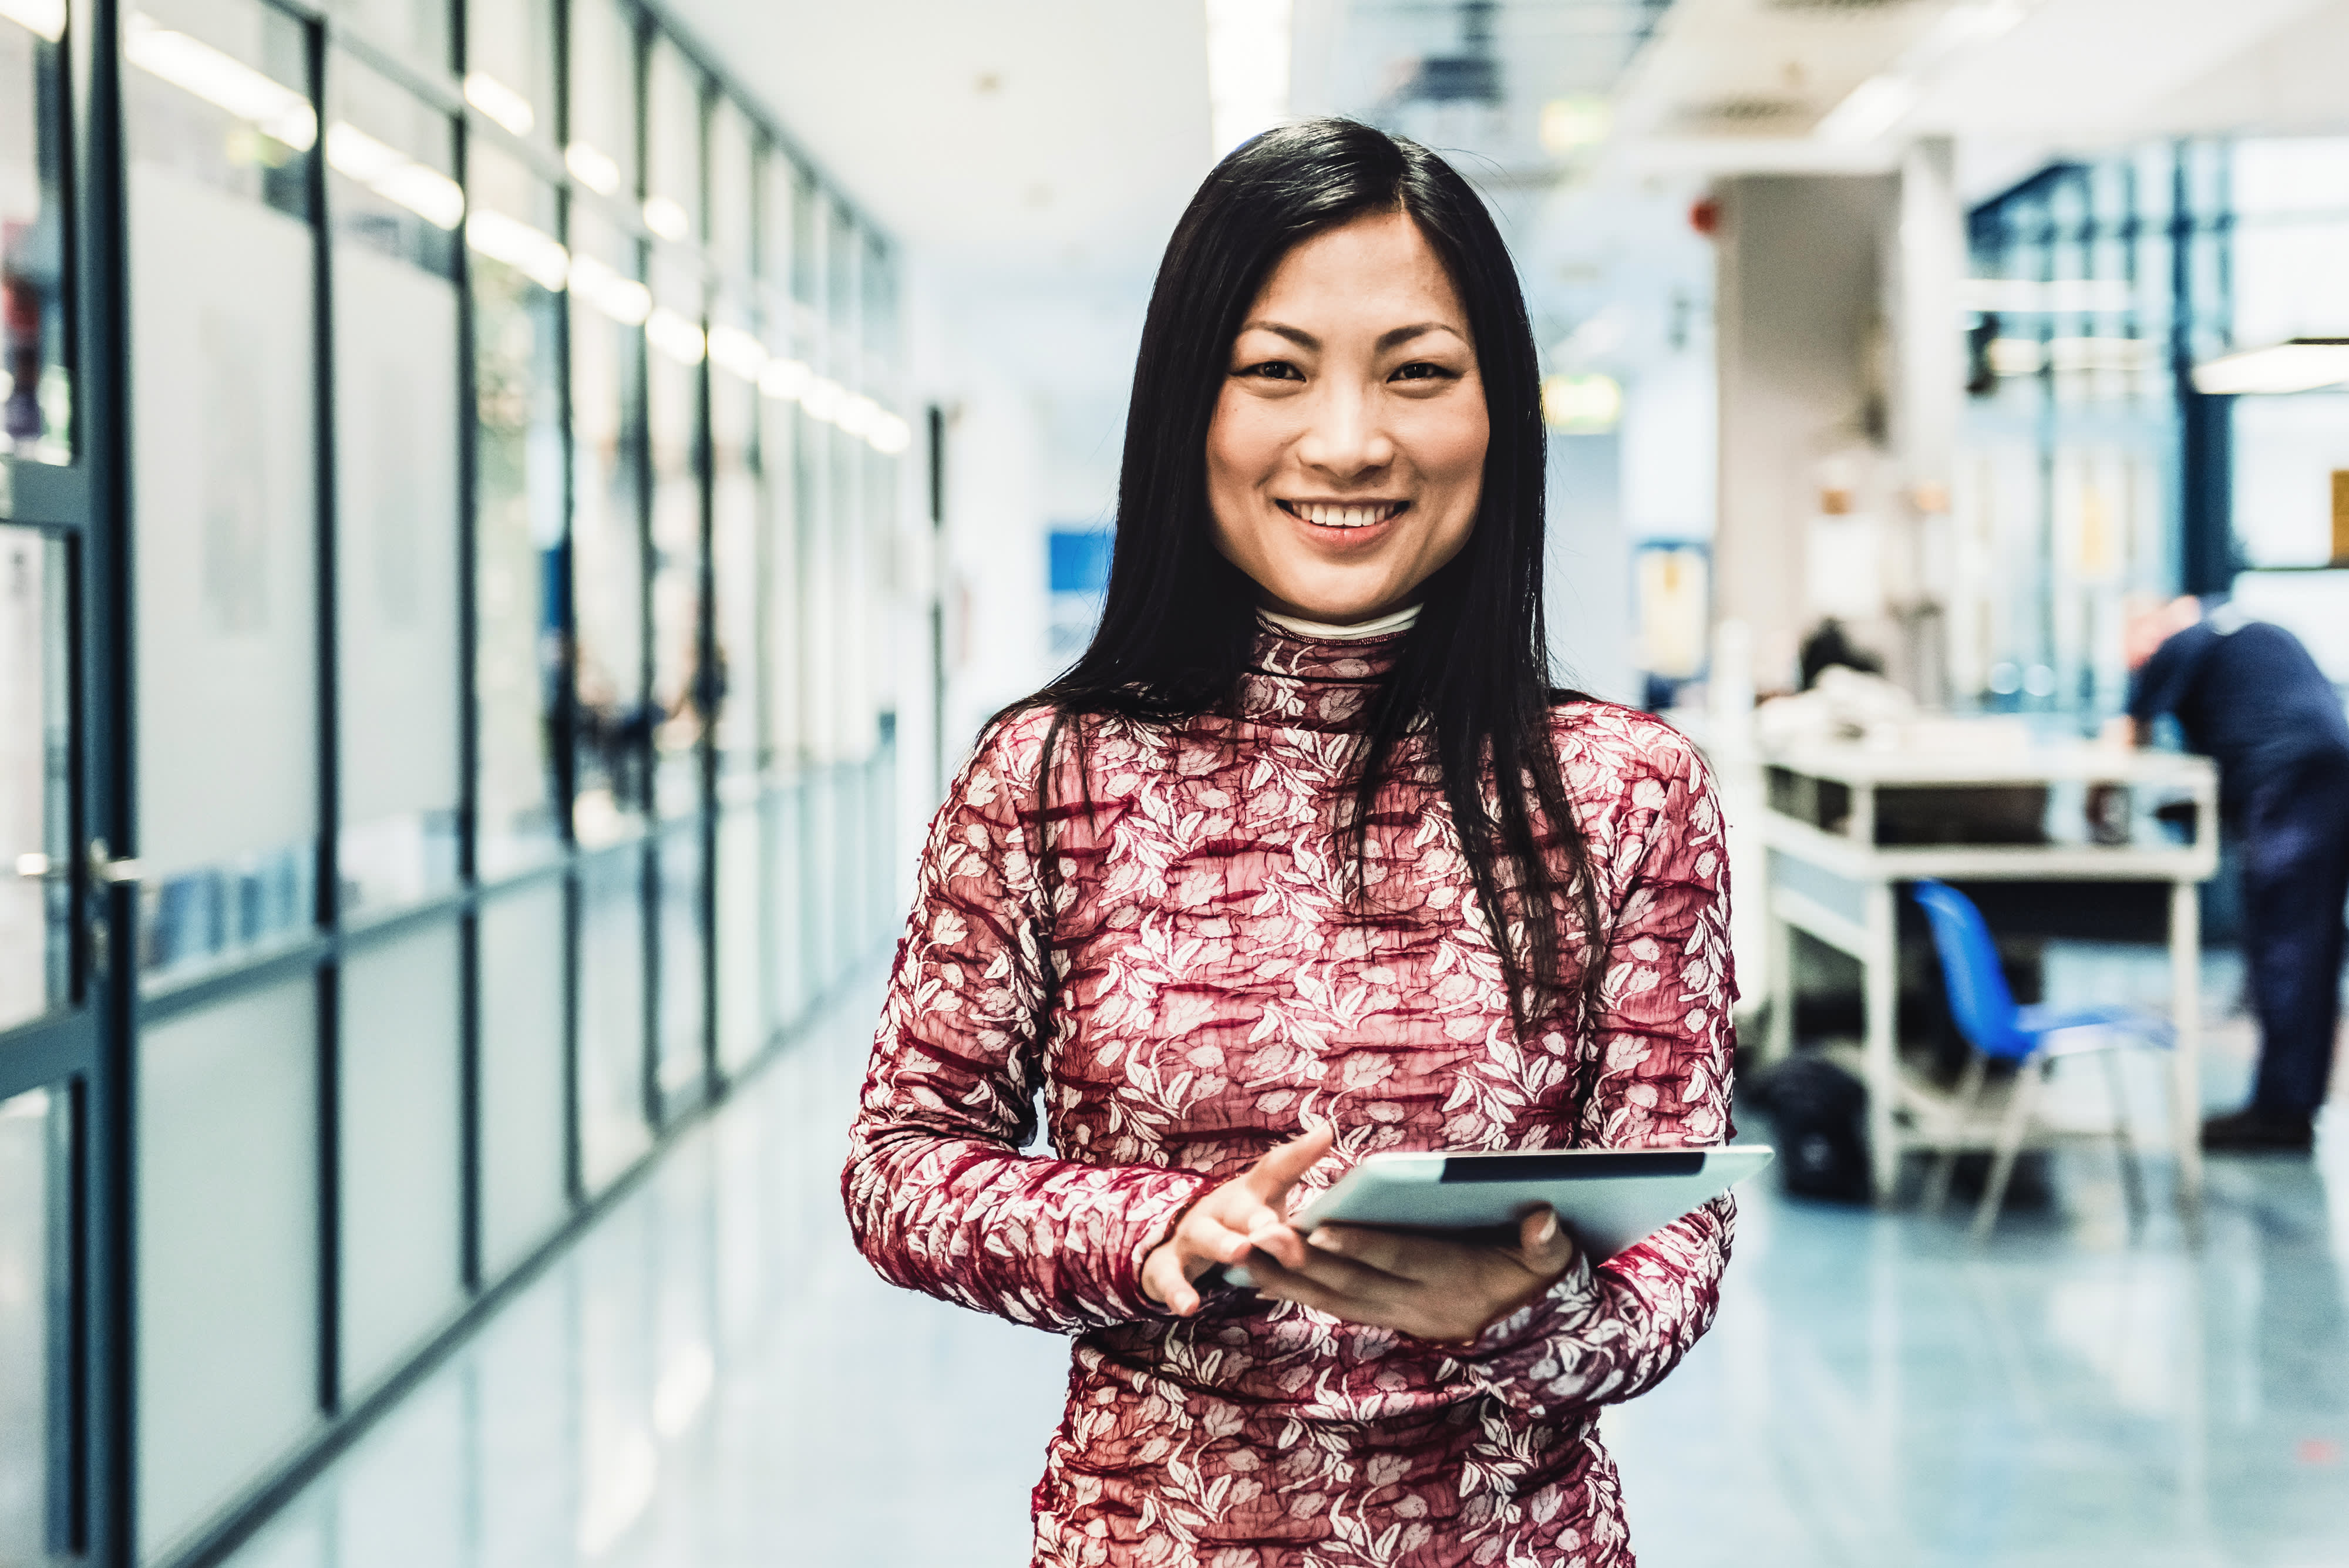 Titelbild für Infoseite “Bachelor Wirtschaftsingenieurwesen Maschinenbau”: Lächelnde Frau mit Tablet im Büro